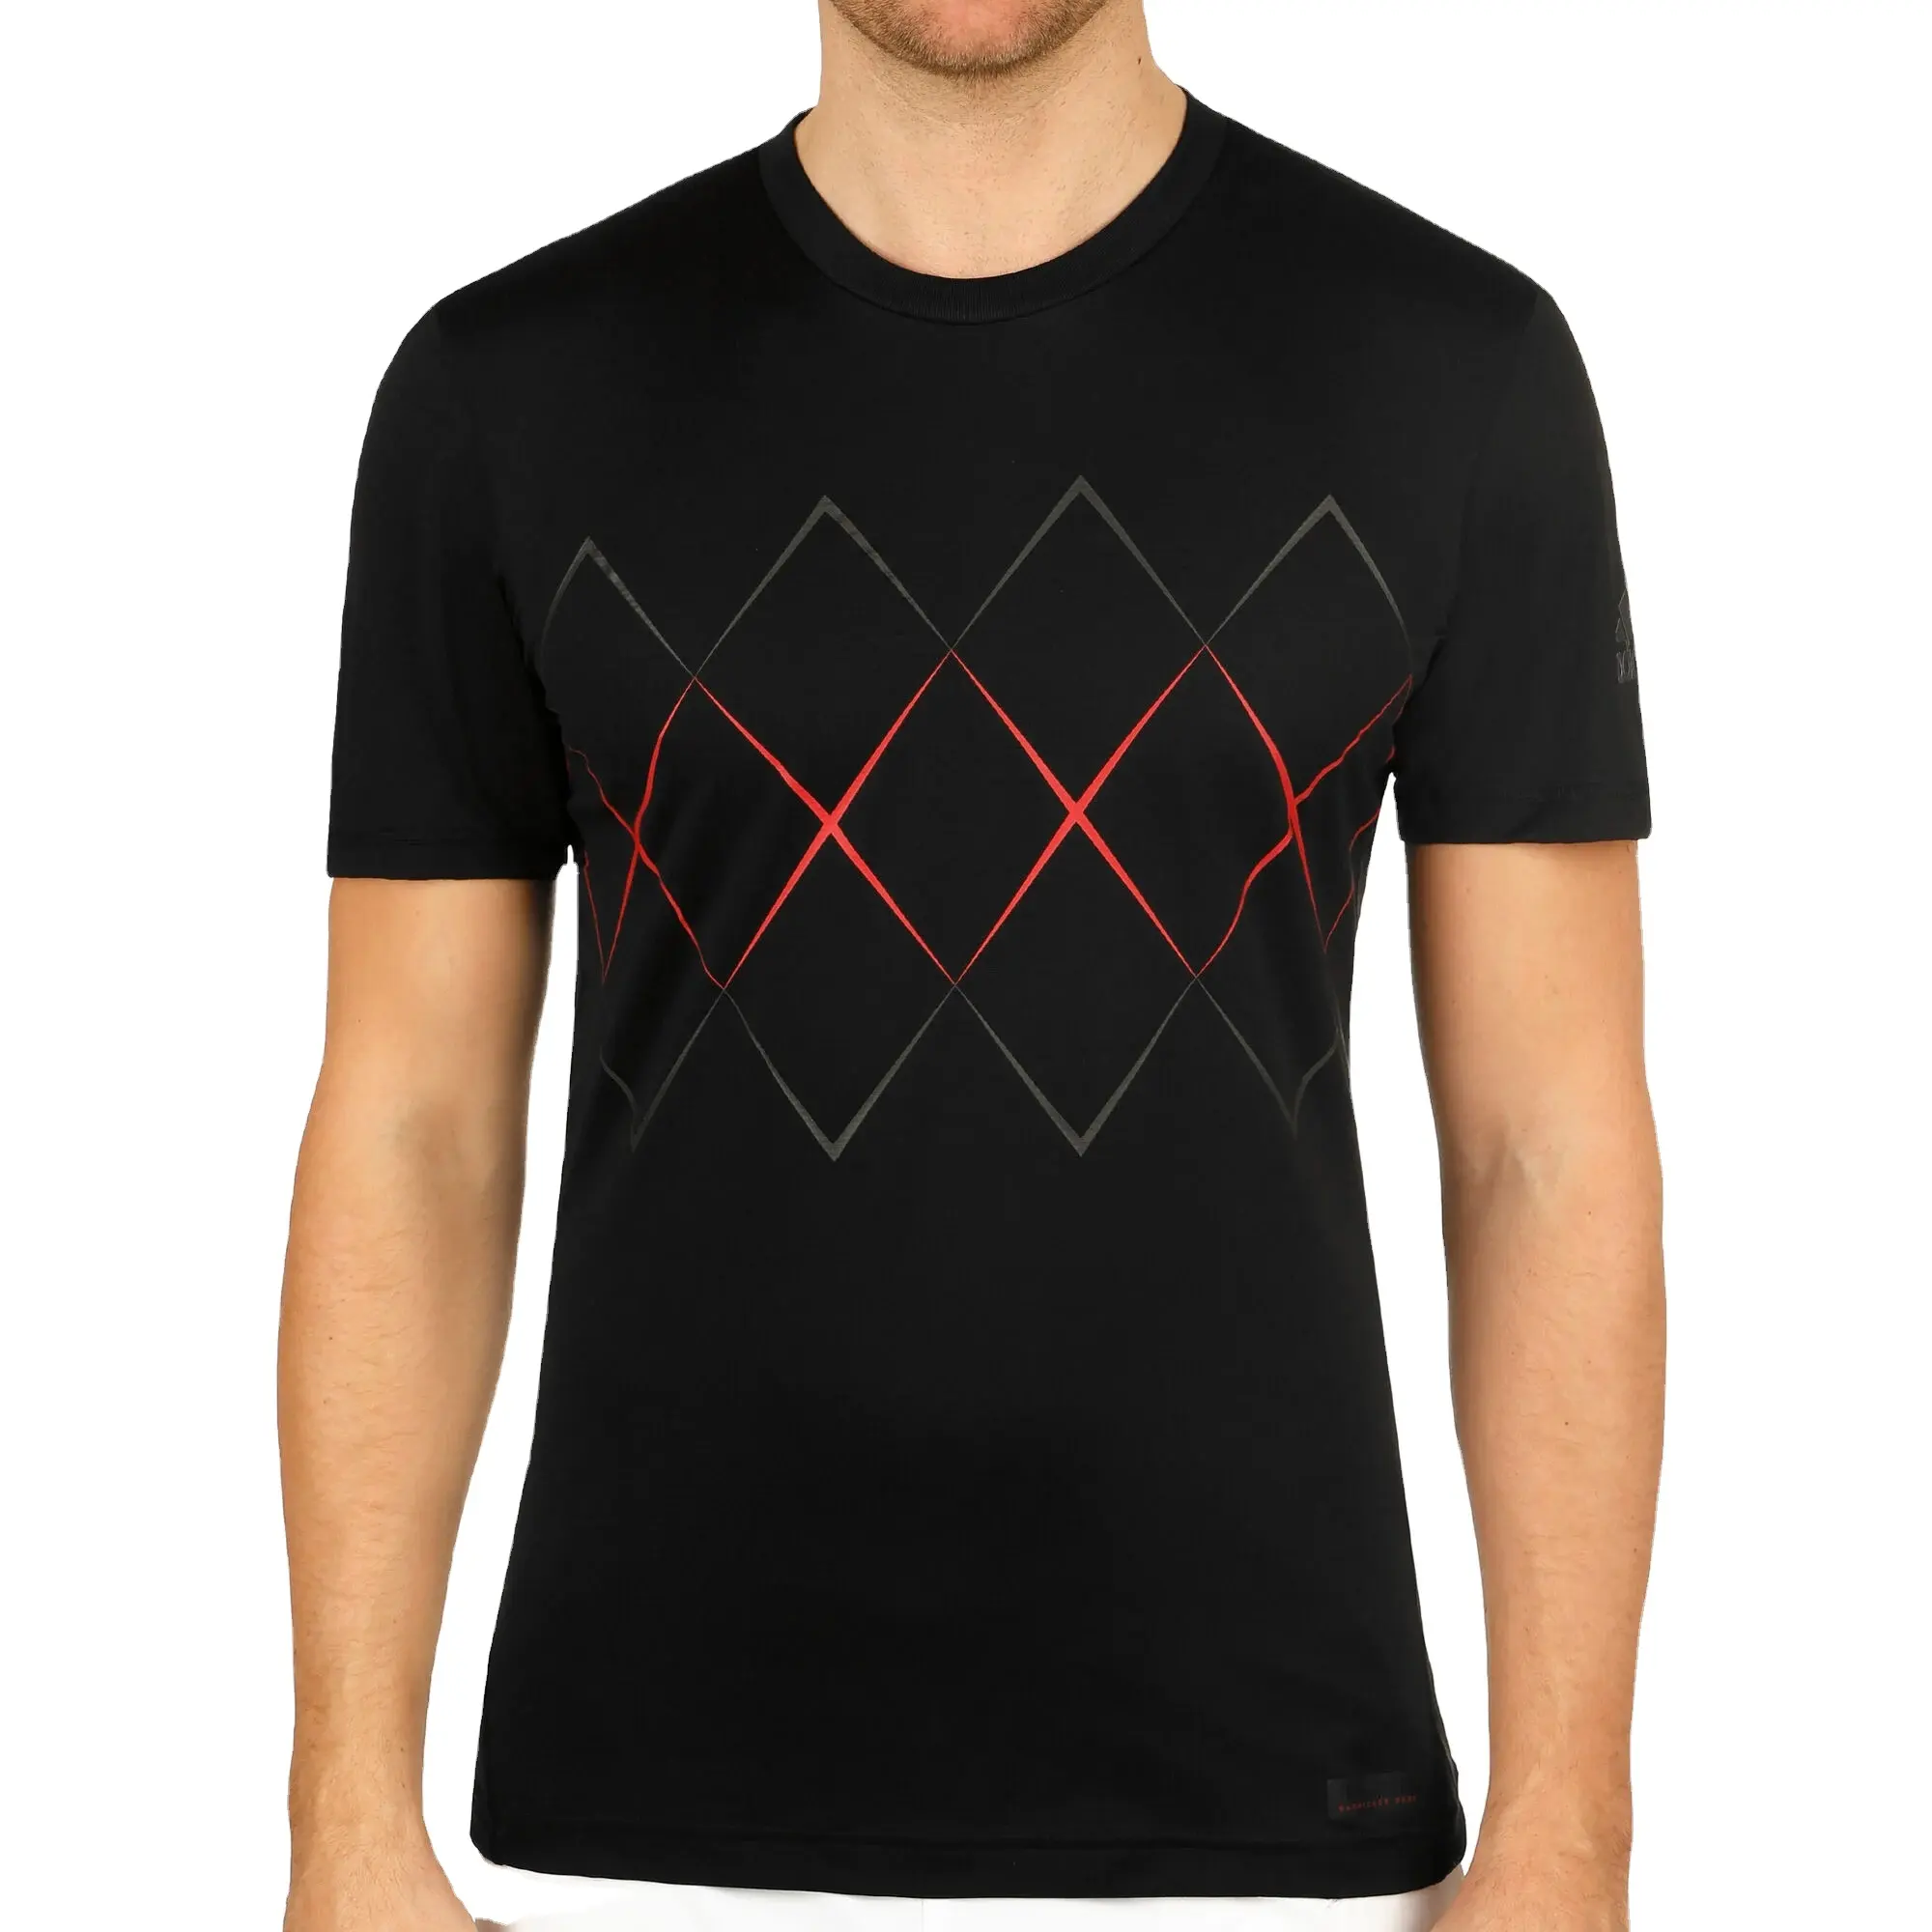 Camiseta de camiseta 100% algodão, durável, melhor qualidade, design triangular, camiseta para homens, marca personalizada, logotipo e cor